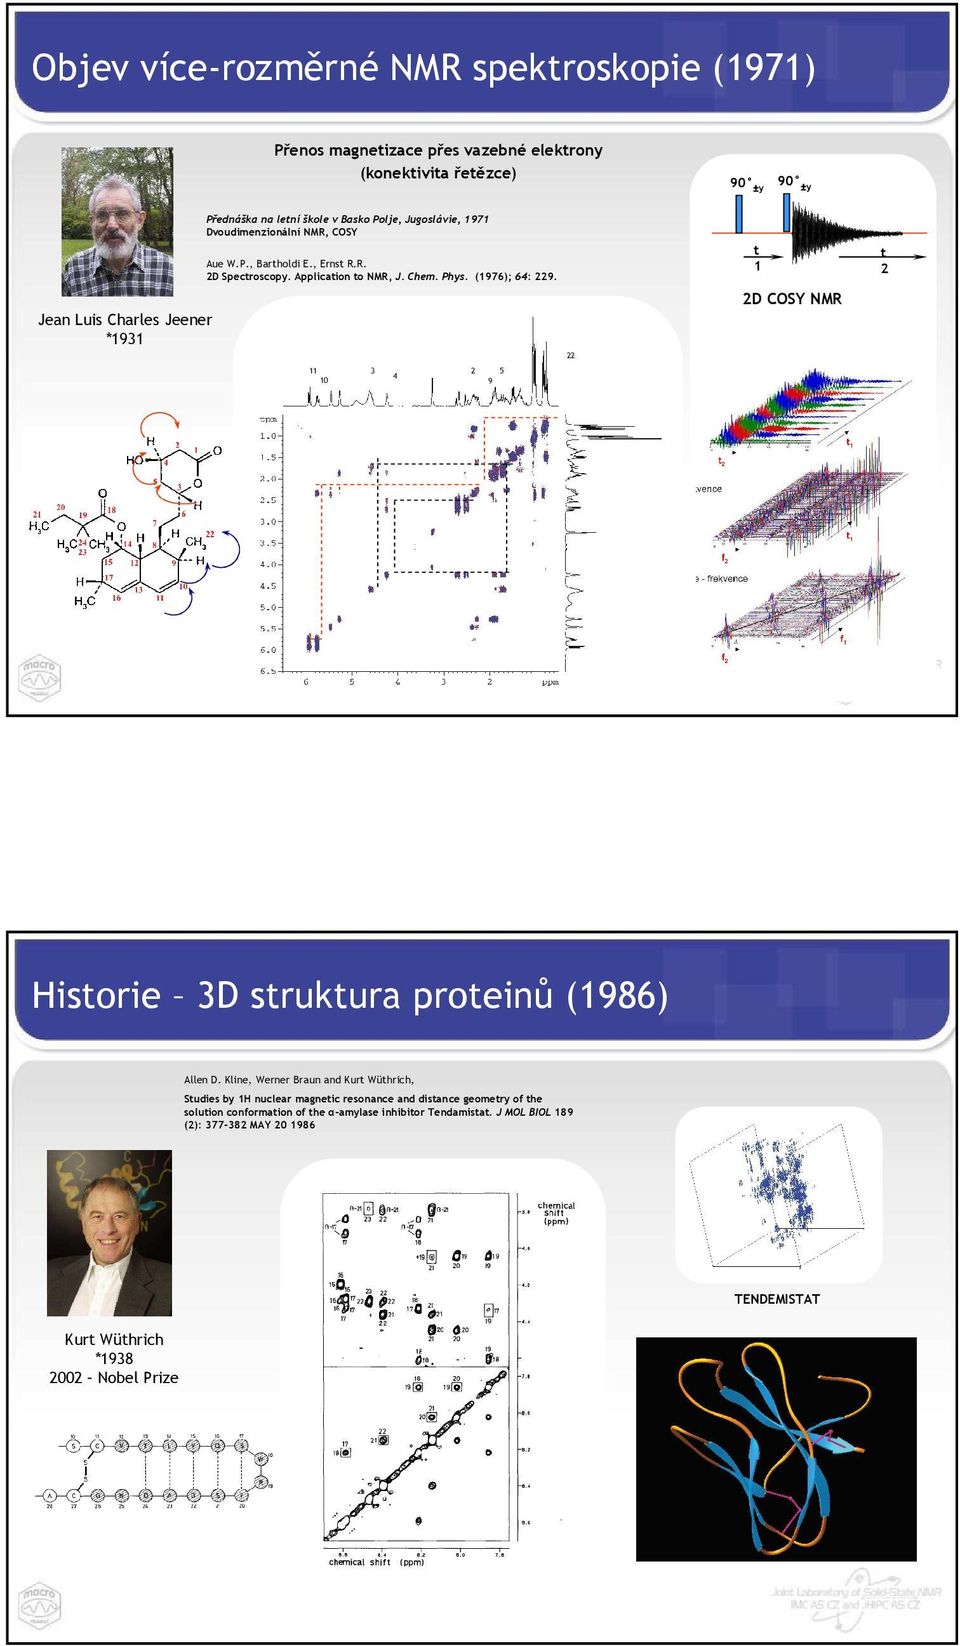 11 3 2 4 10 9 5 22 t 1 2D COSY NMR t 2 Historie 3D struktura proteinů (1986) Allen D.